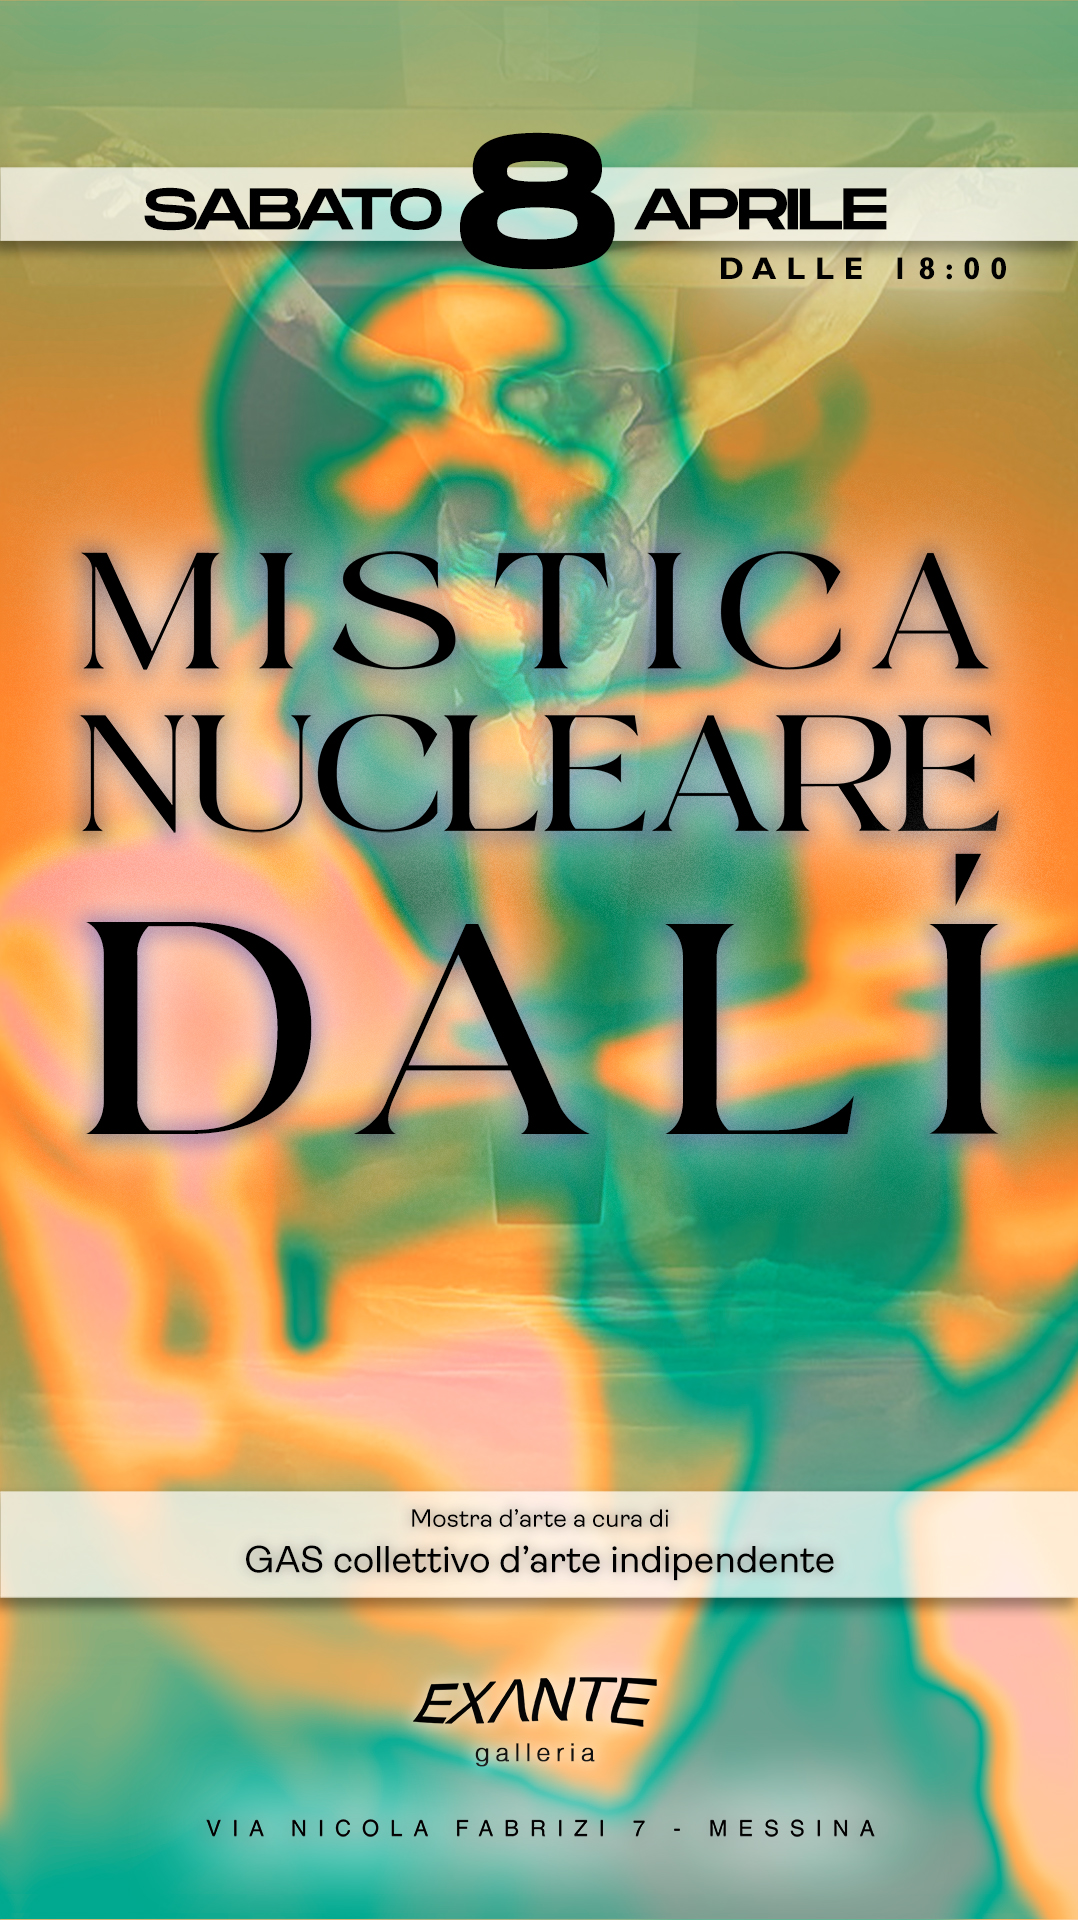 Mistica Nucleare Dalì 